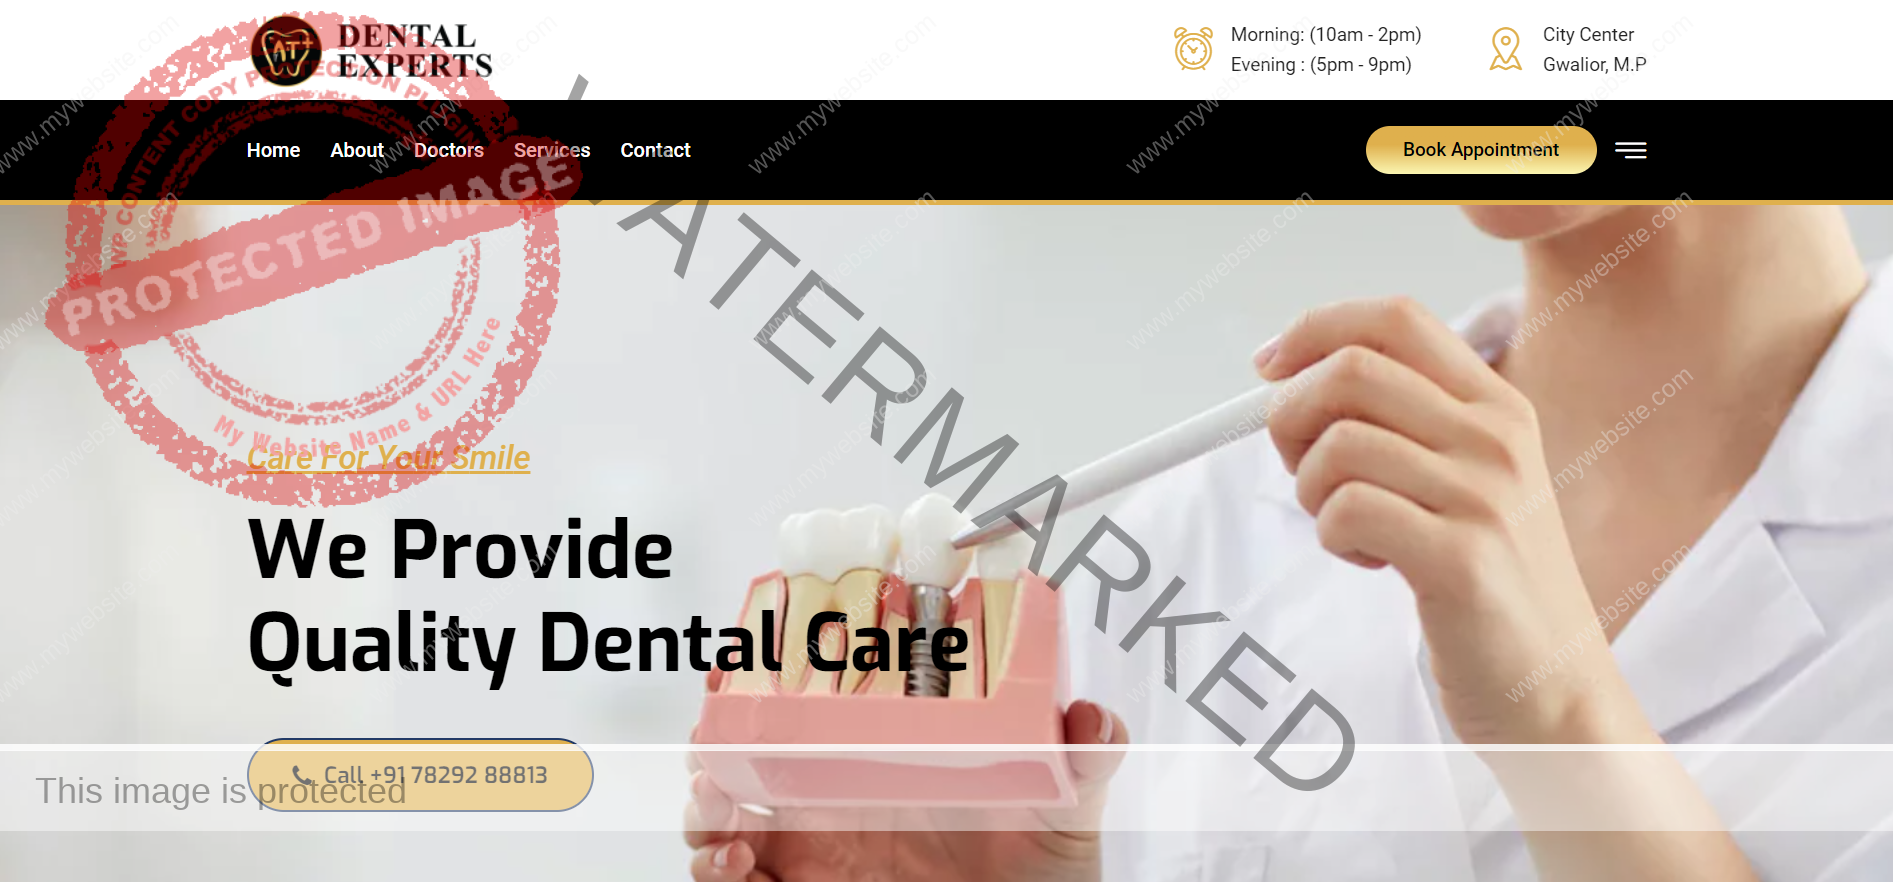 Dr. A&T Dental Website